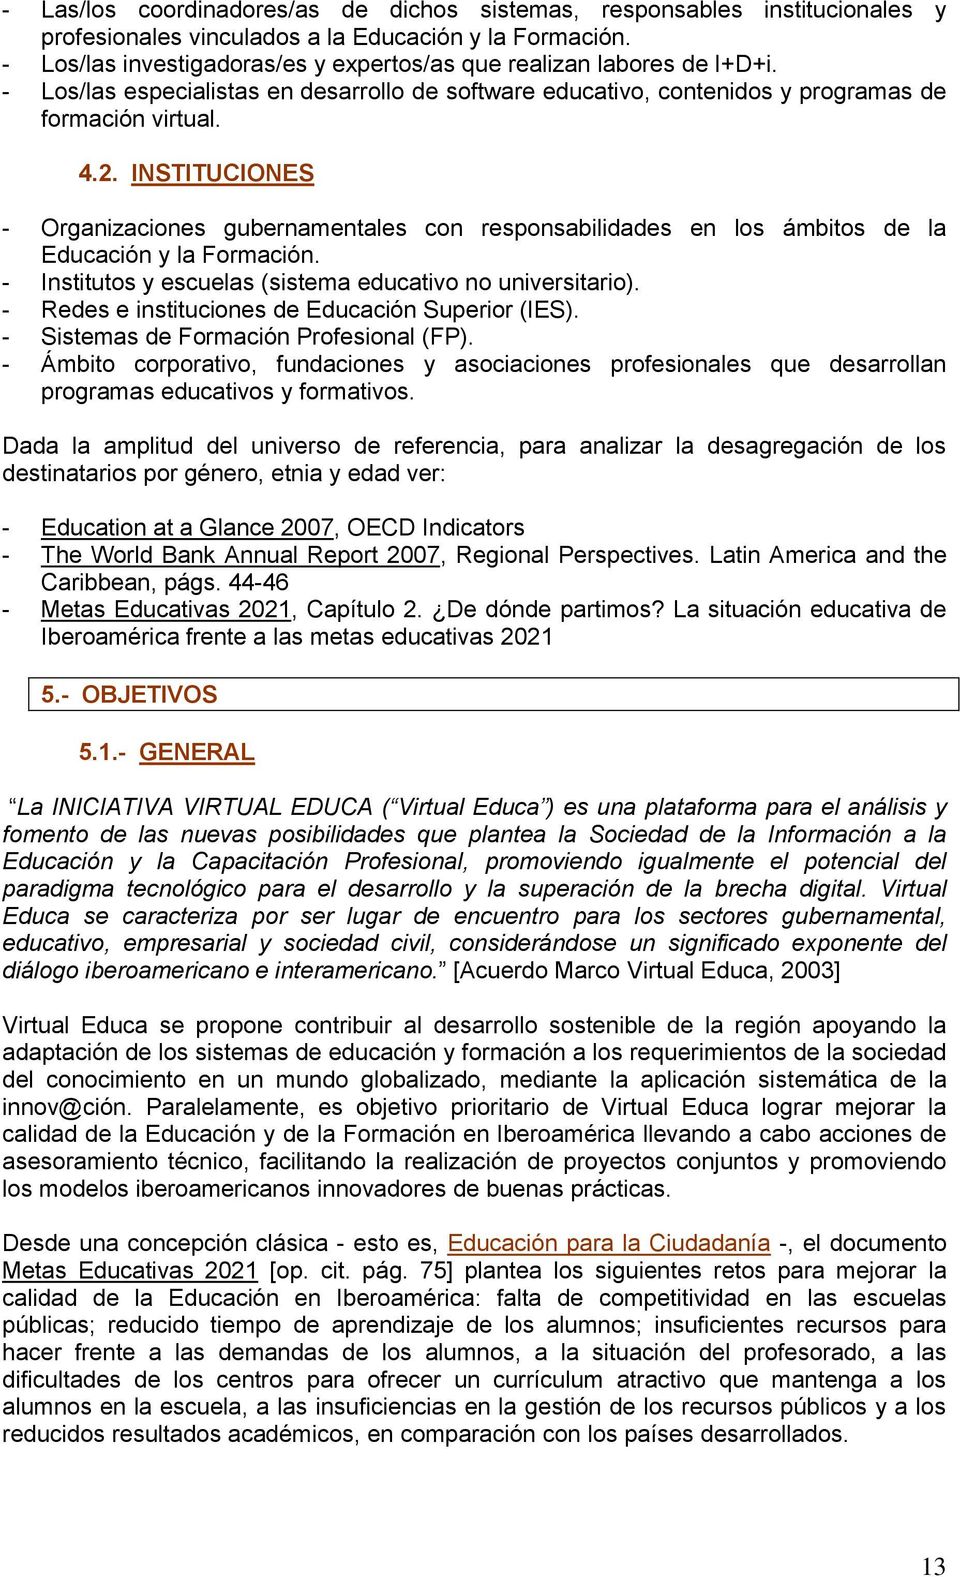 INSTITUCIONES - Organizaciones gubernamentales con responsabilidades en los ámbitos de la Educación y la Formación. - Institutos y escuelas (sistema educativo no universitario).